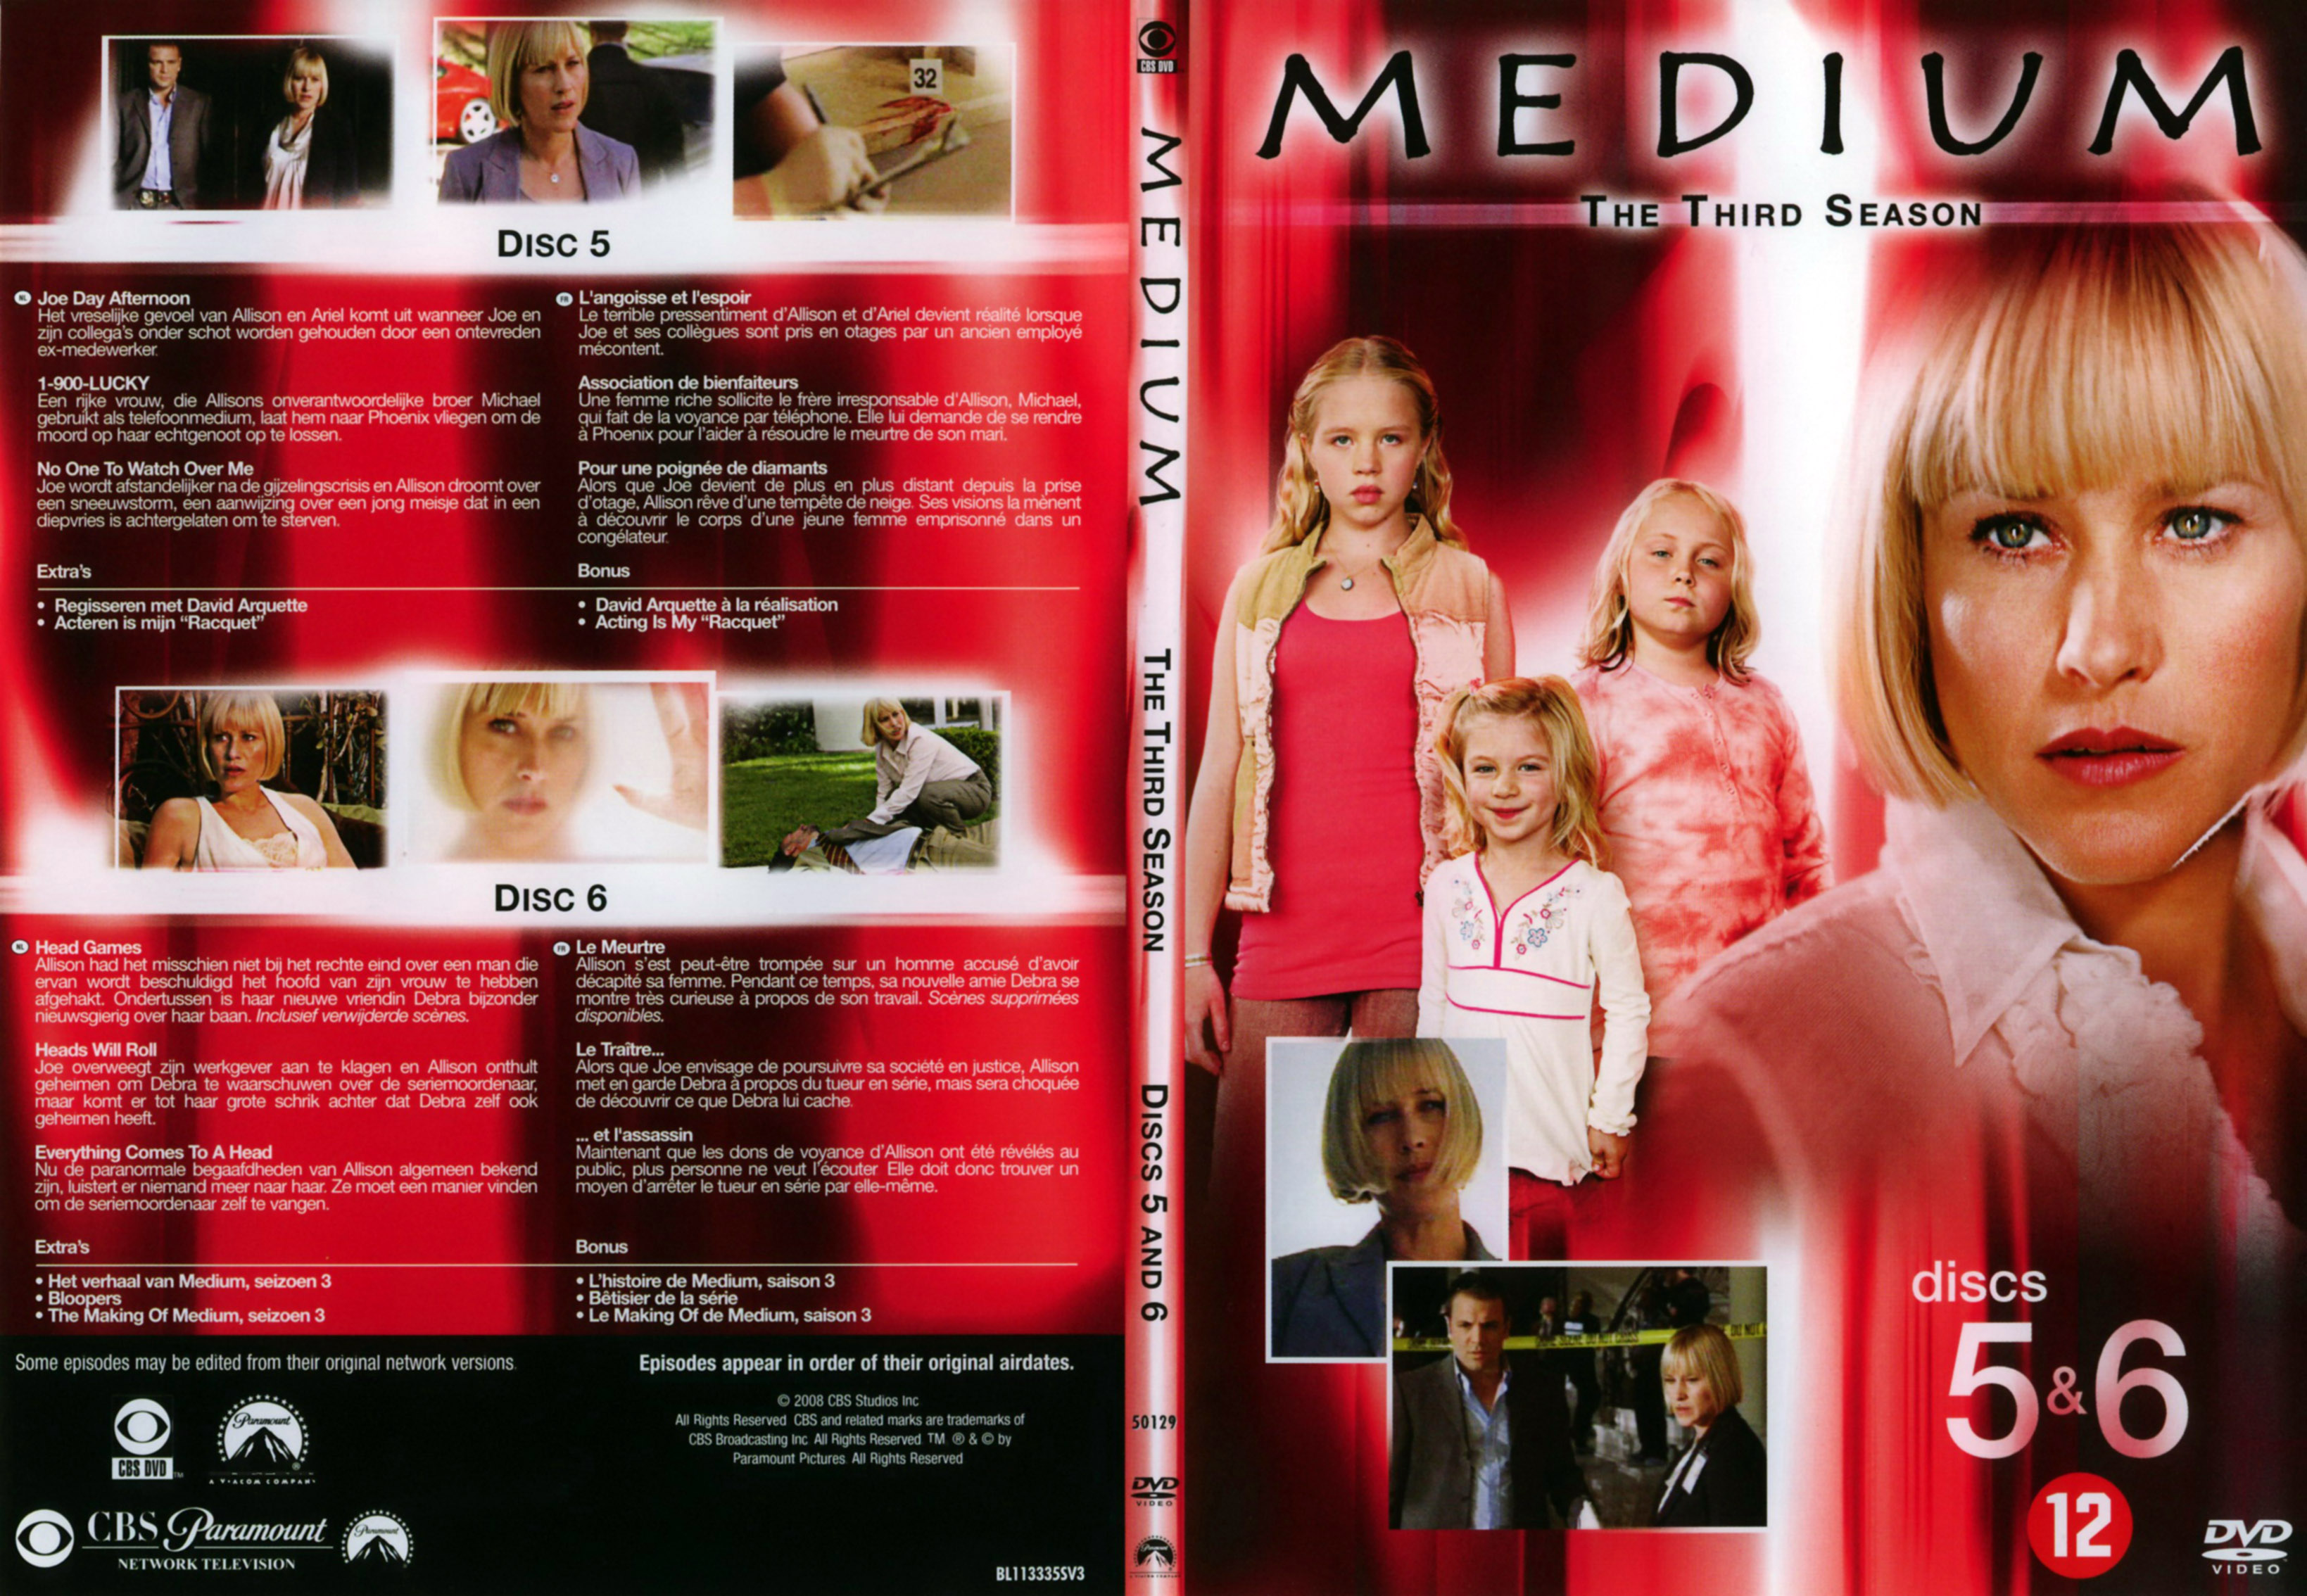 Jaquette DVD Mdium Saison 3 DVD 3